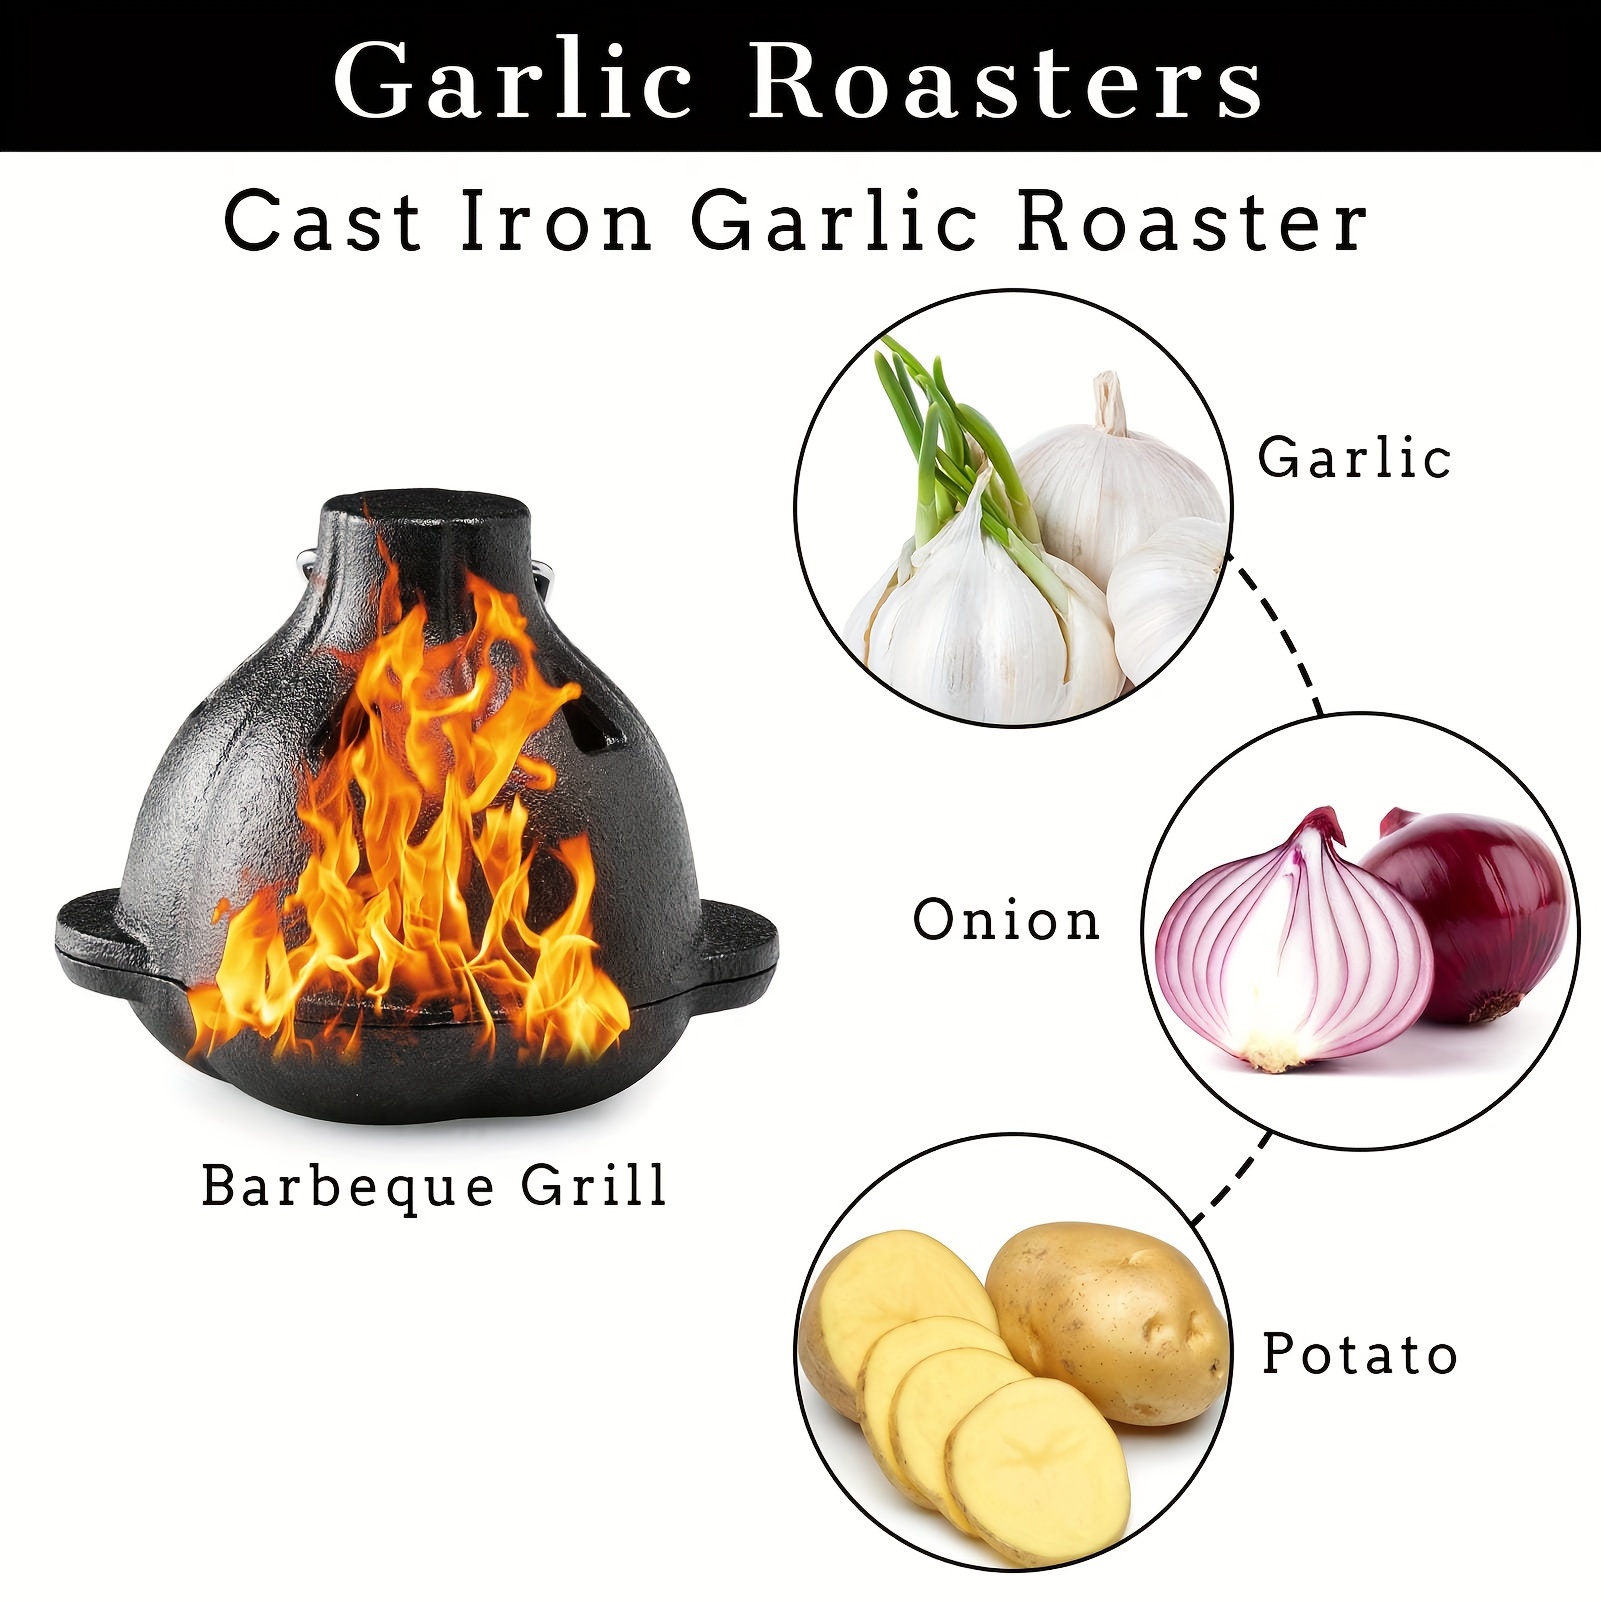 4 X 5-Inch Cast Iron Garlic Roaster & Squeezer Set